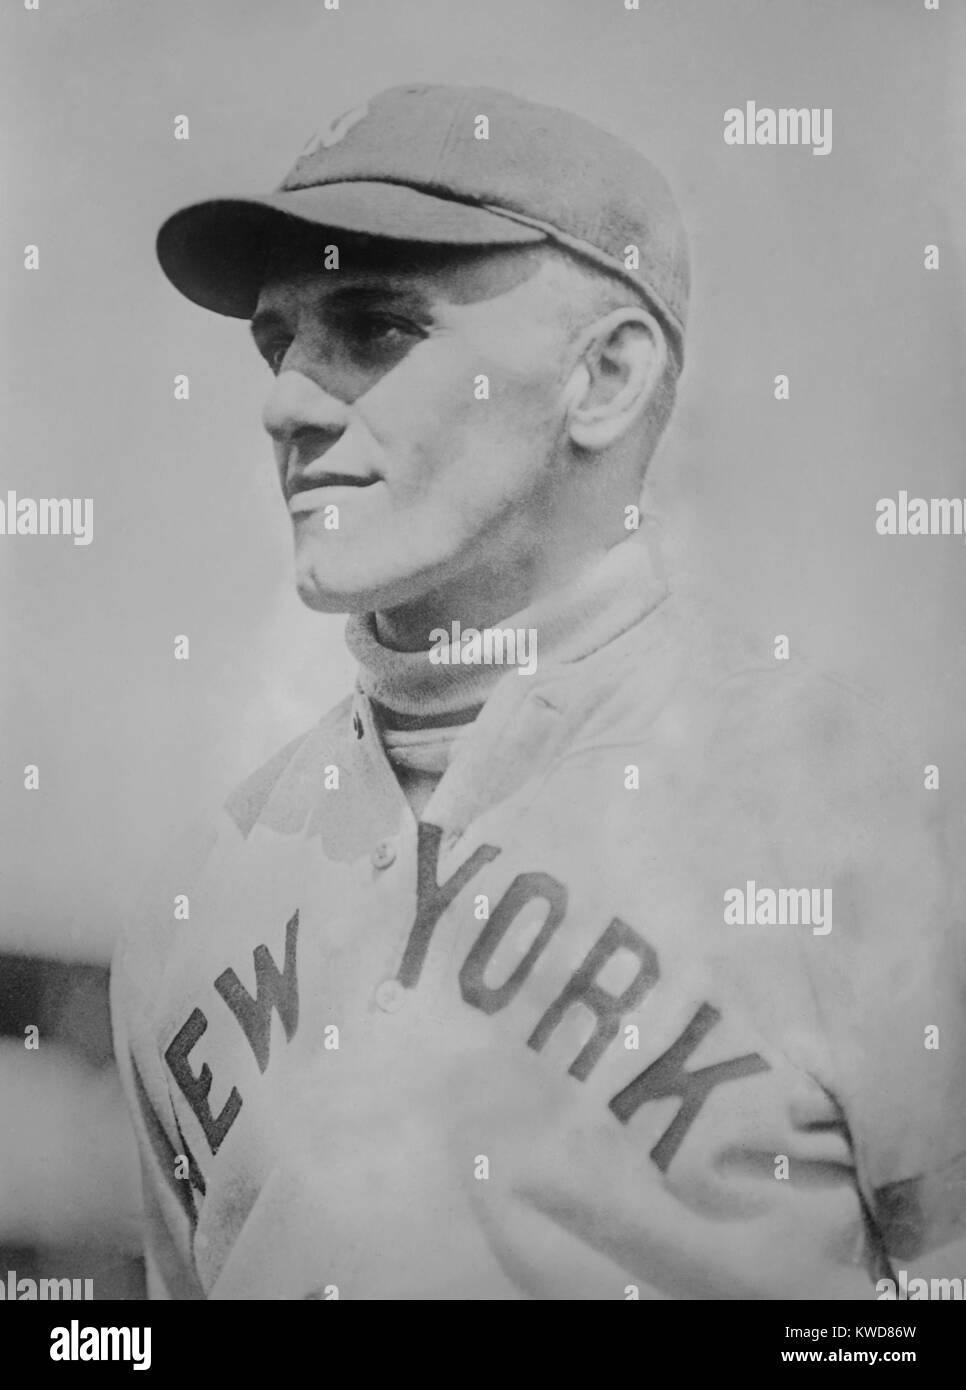 George Halas comme une nouvelle York Yankee en 1919. Il a joué 12 matchs en tant que joueur jusqu'à ce qu'il a été marginalisée par une blessure de la hanche. Il a changé son attention au football et a fondé la Ligue nationale de football et l'ours de Chicago au début des années 1920. (BSLOC   2015 17 130) Banque D'Images